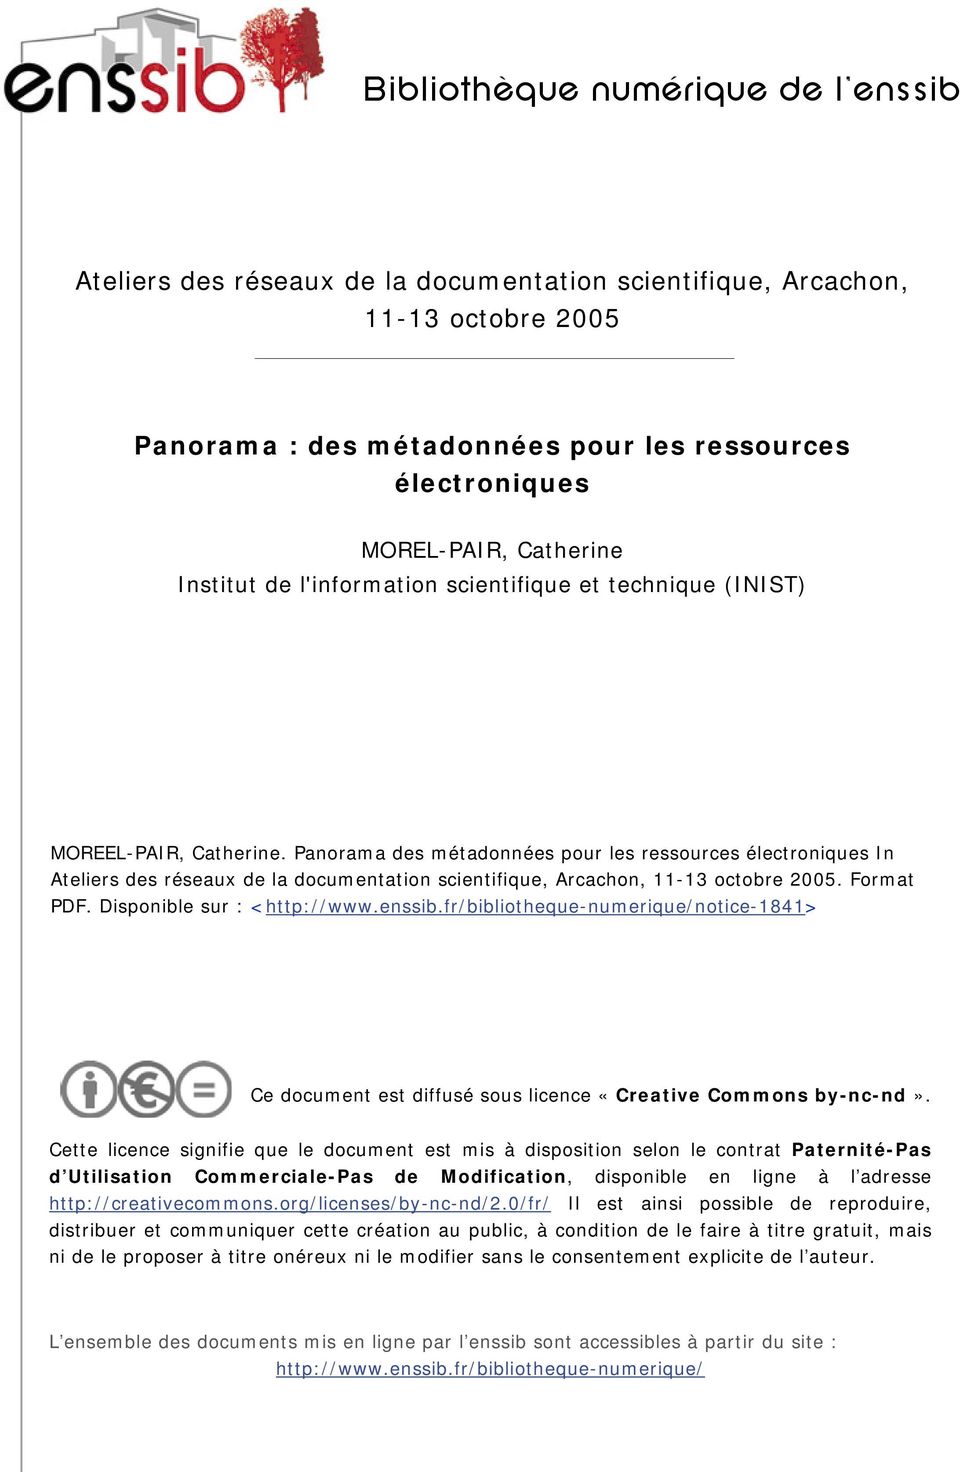 Panorama des métadonnées pour les ressources électroniques In Ateliers des réseaux de la documentation scientifique, Arcachon, 11-13 octobre 2005. Format PDF. Disponible sur : <http://www.enssib.